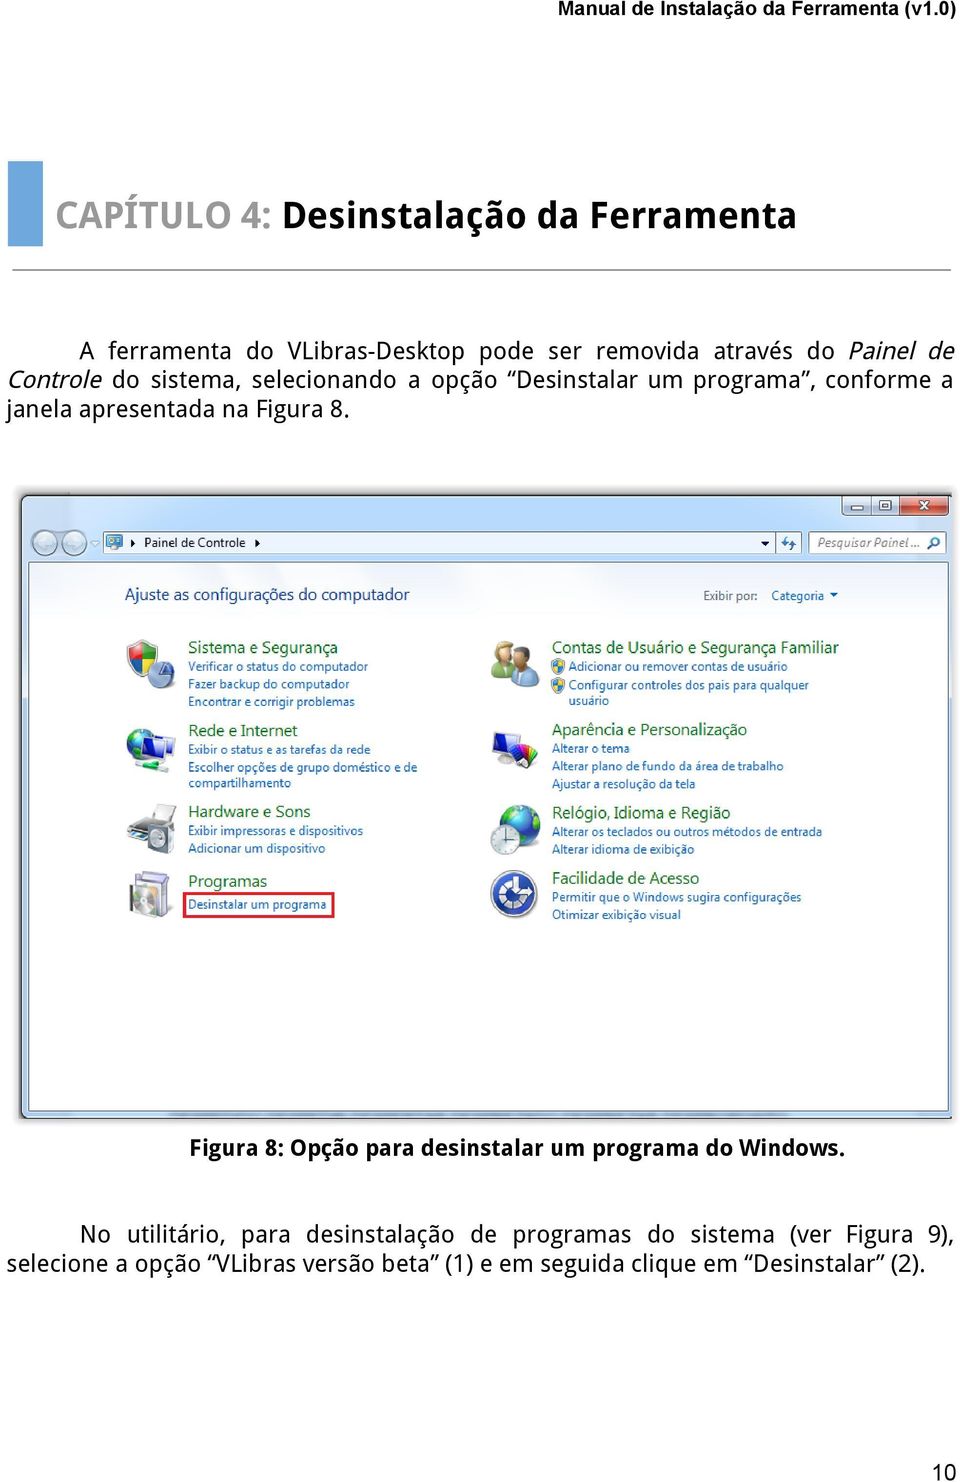 Figura 8. Figura 8: Opção para desinstalar um programa do Windows.